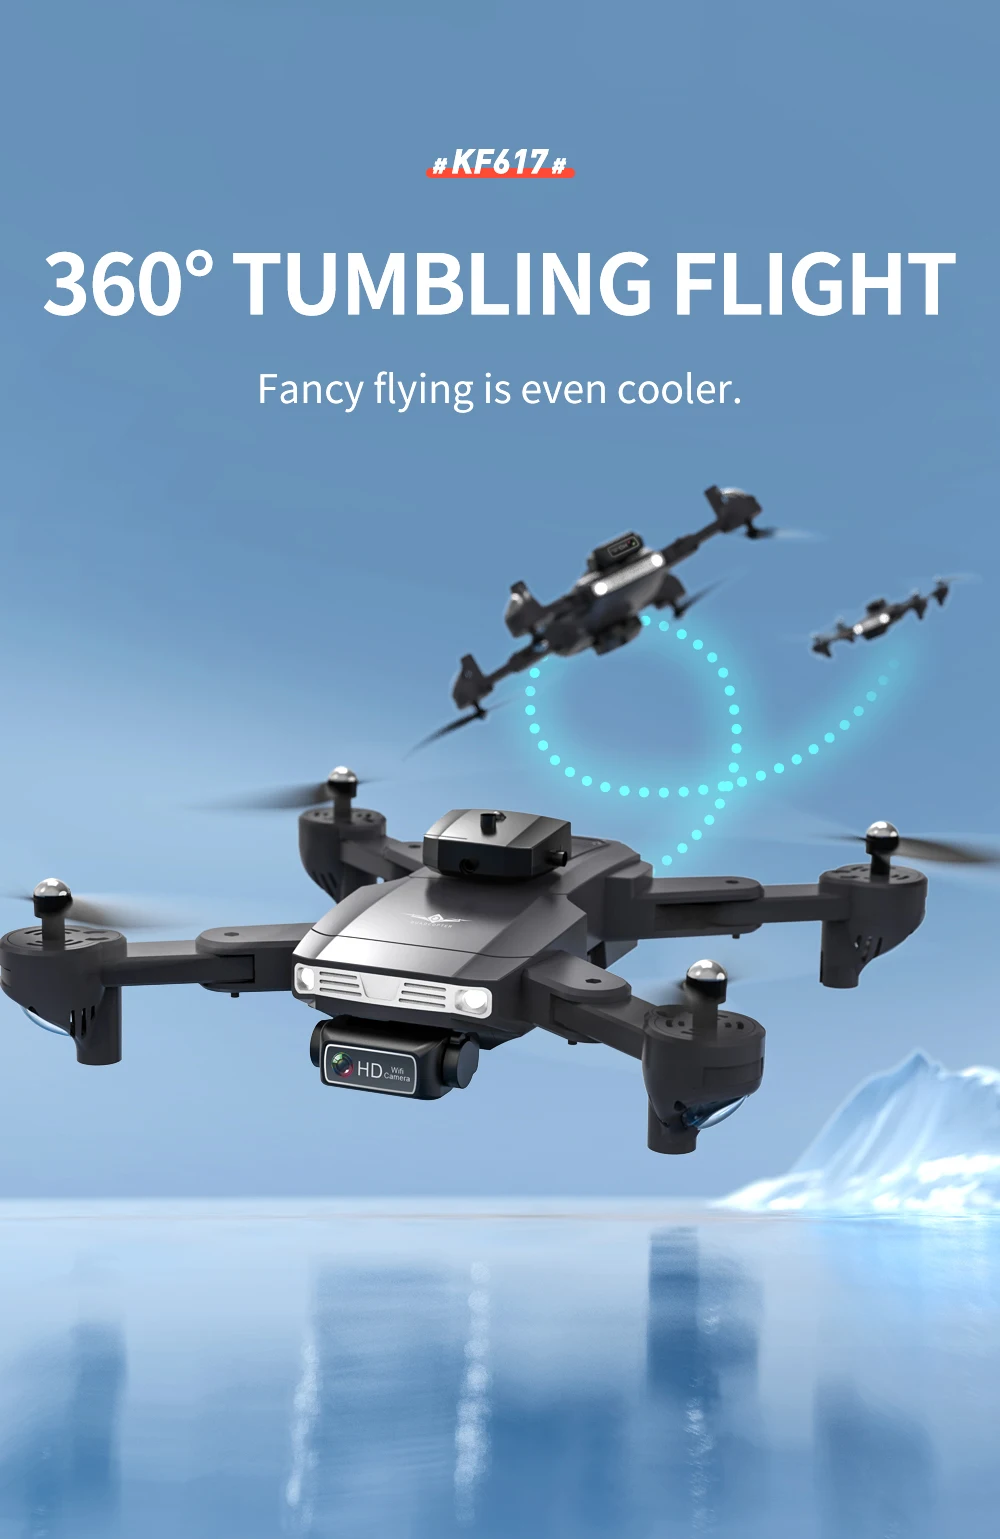 KF617 Drone, #kf617 # 3600 tumbling flight fancy flying